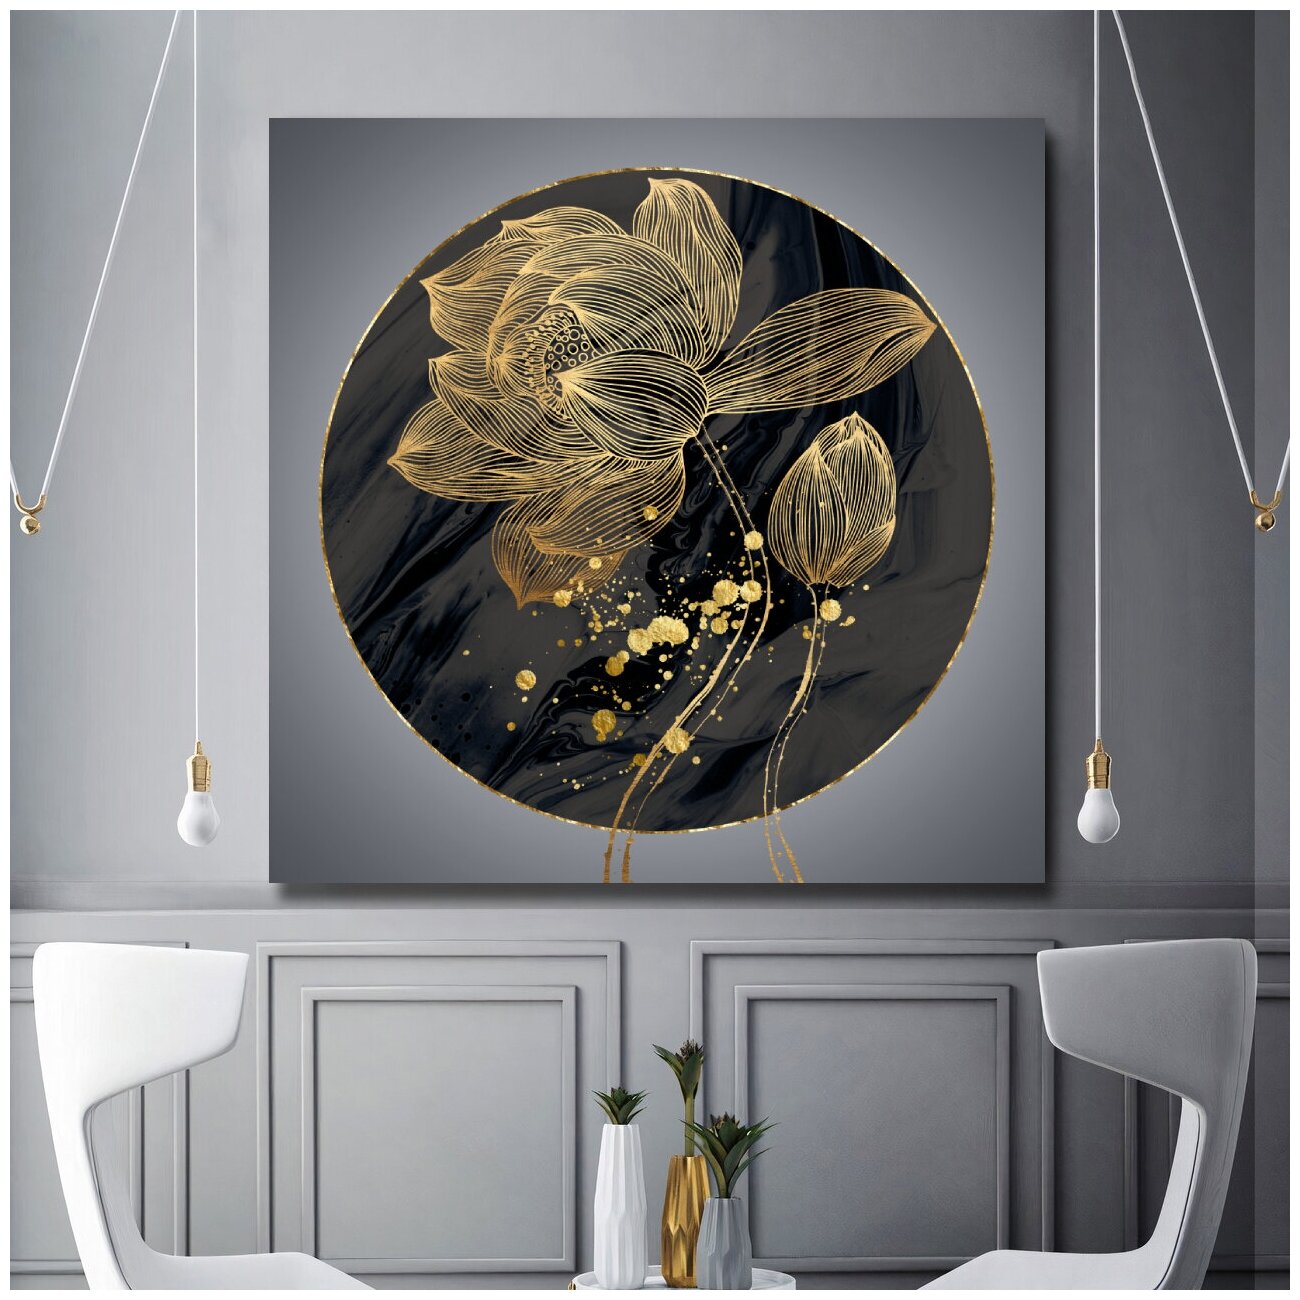 Современная интерьерная картина в гостиную/зал/спальню "Золотой цветок", холст на подрамнике, 70х70 см